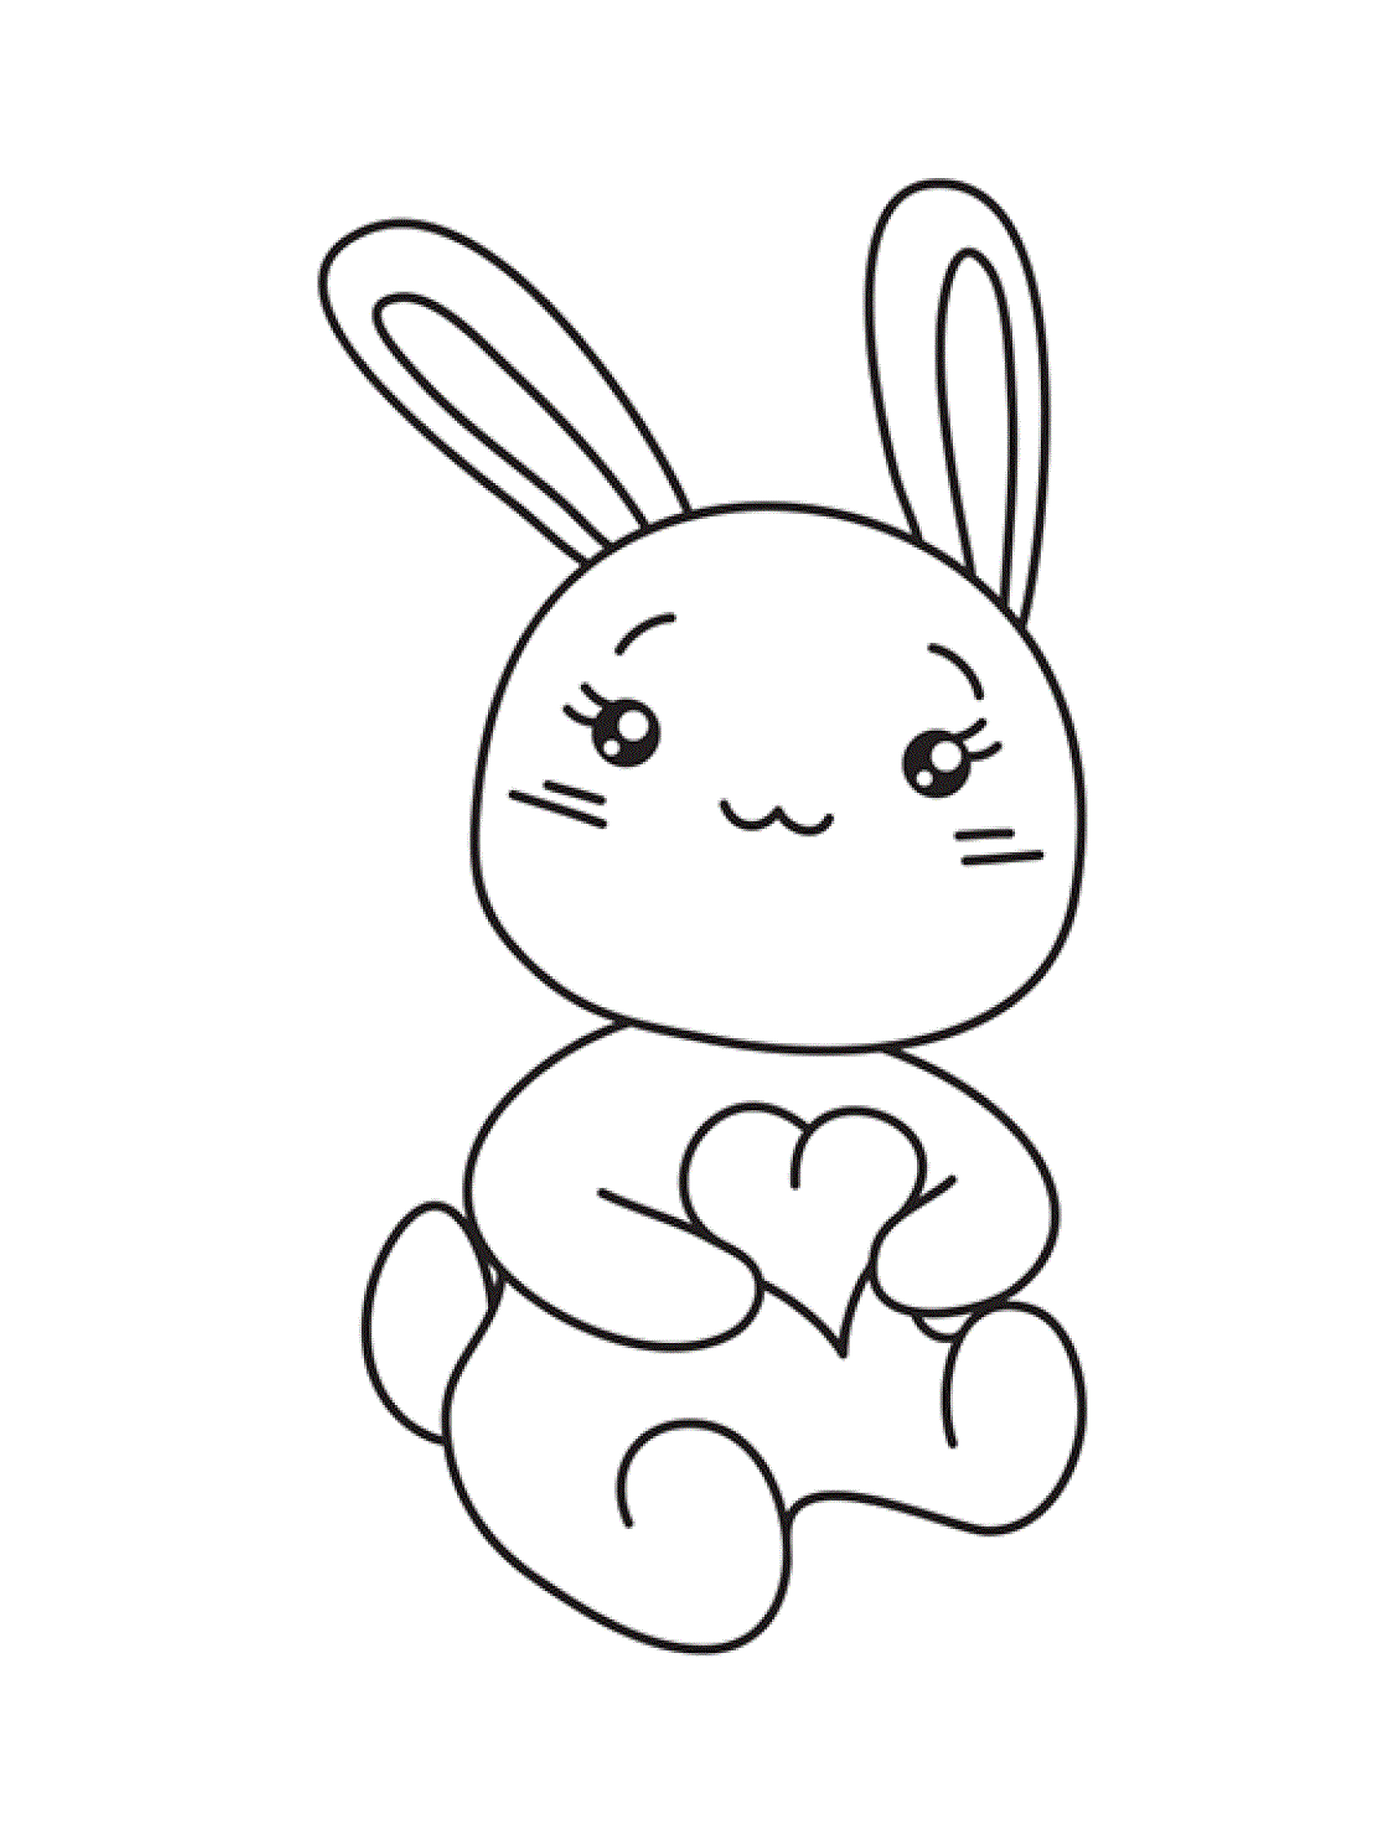  أرنب صغير مع قلب 